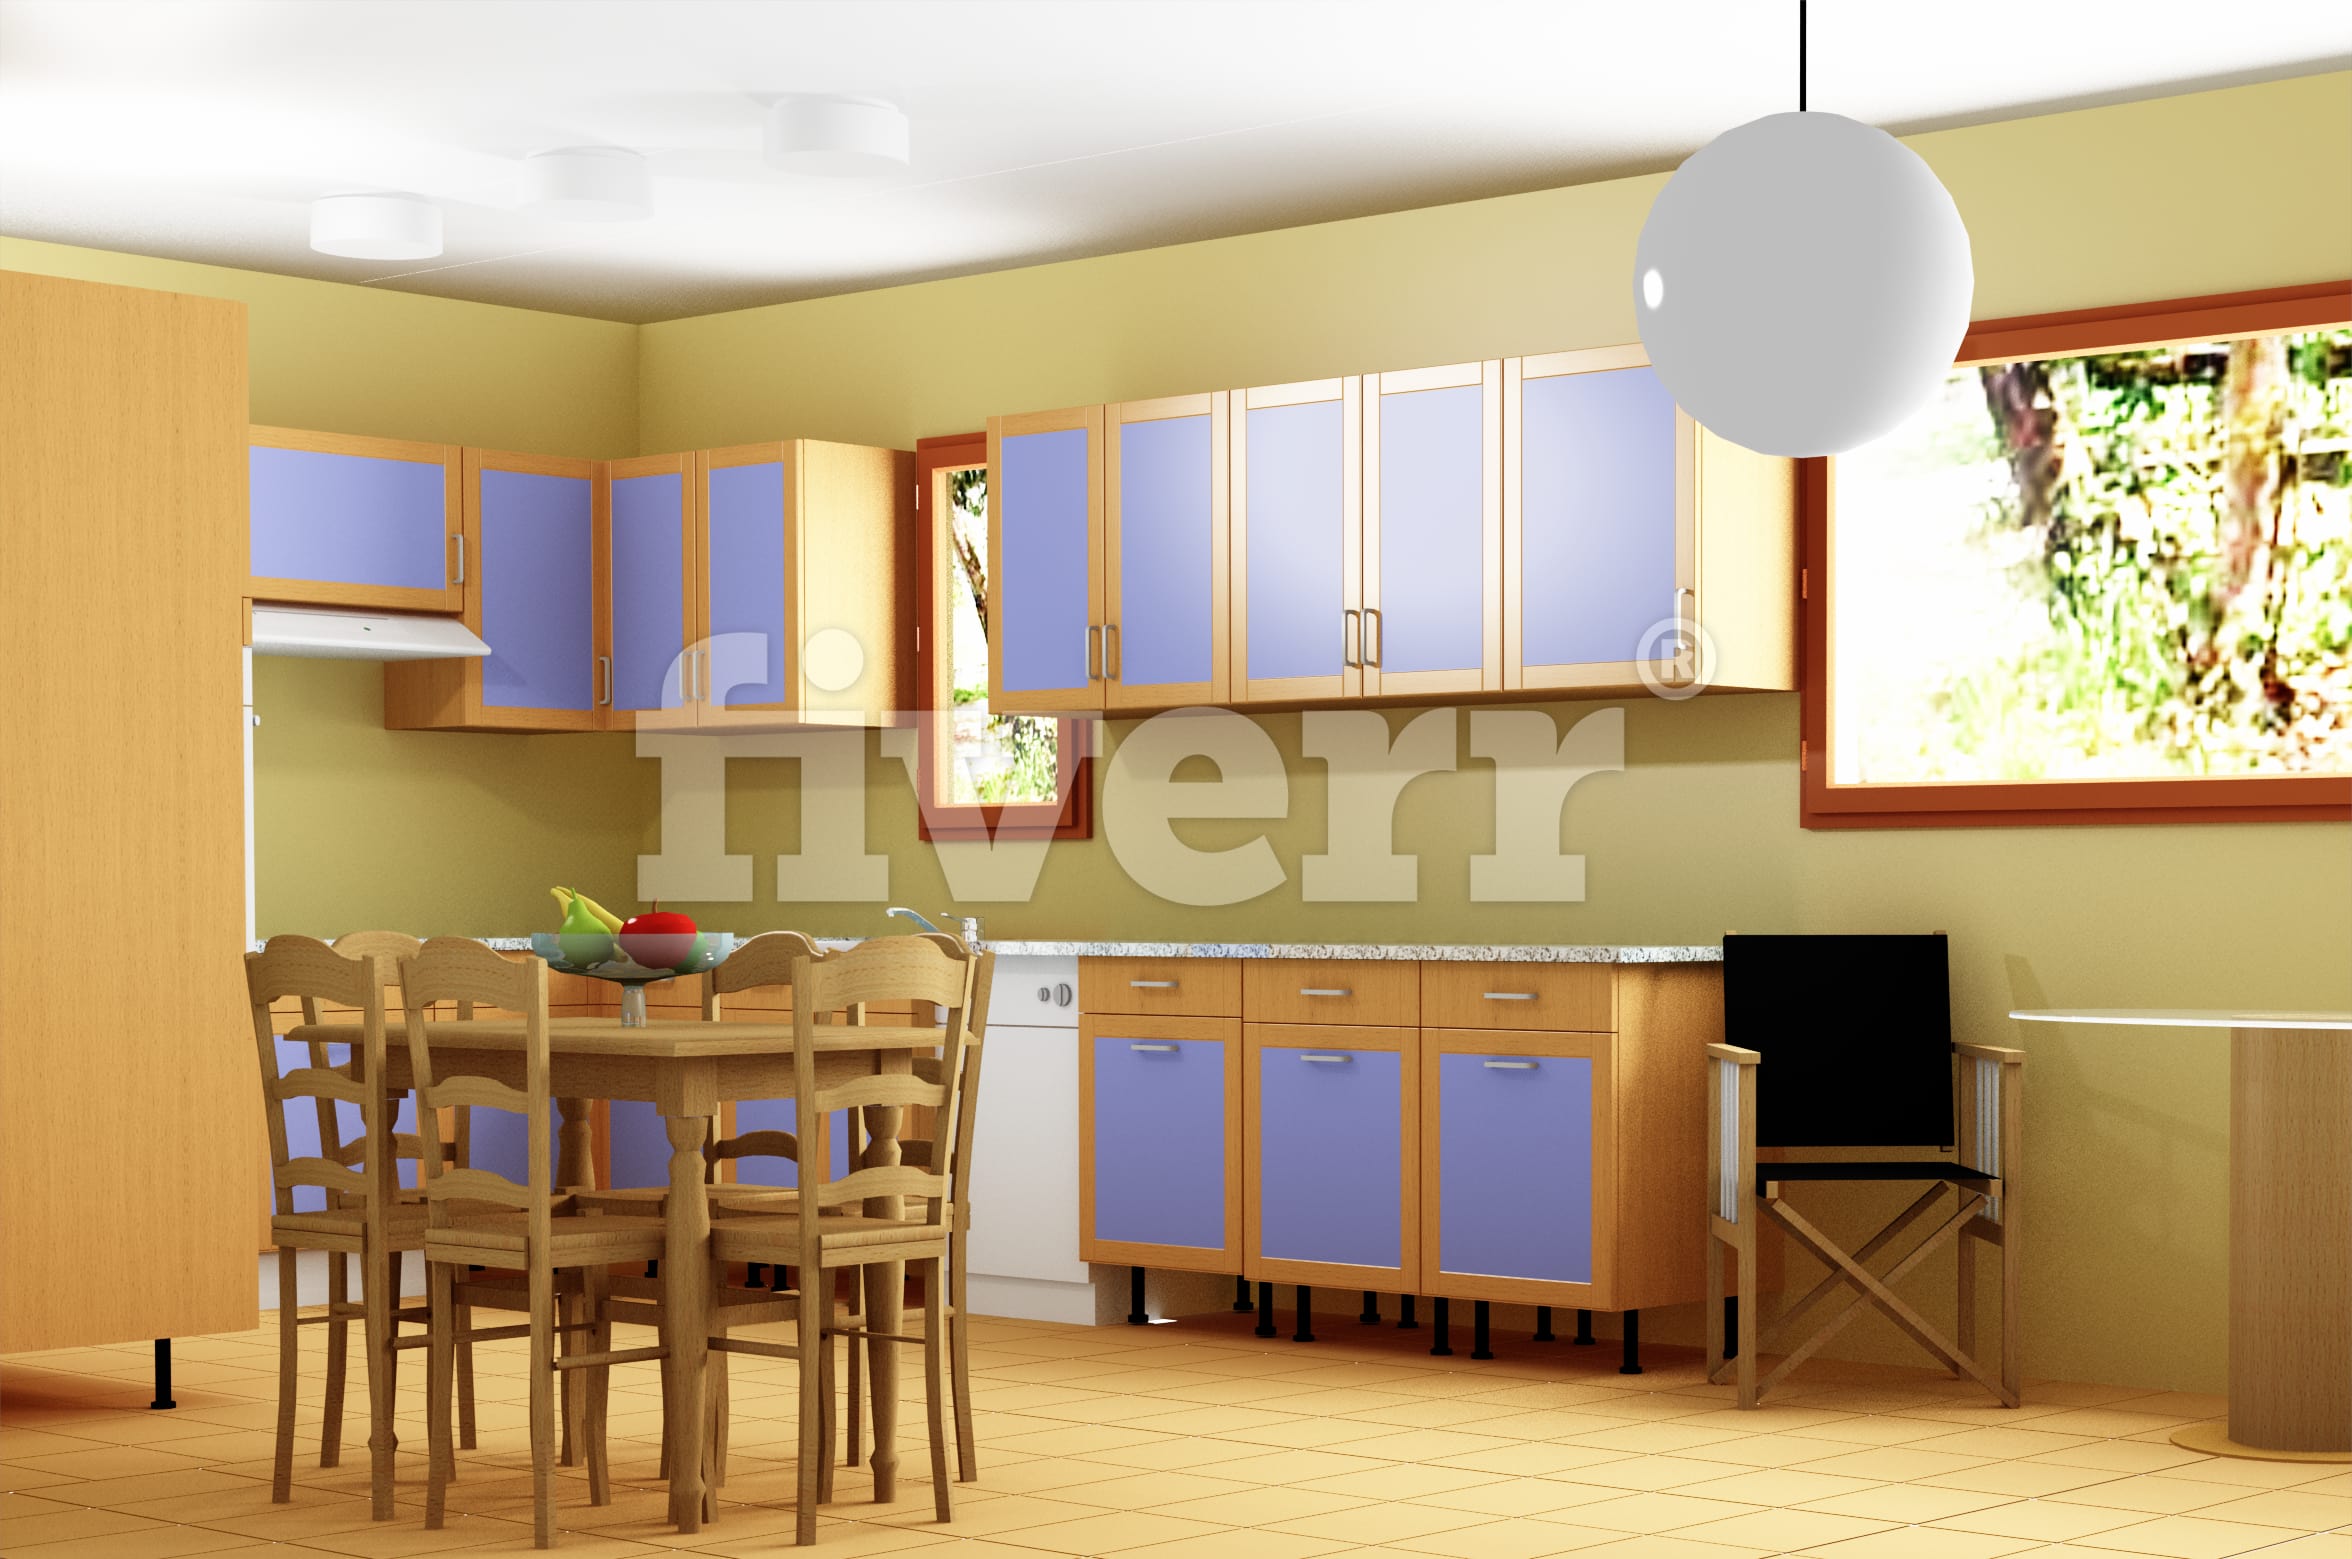 Design 3d kitchen design by Ivosb2012